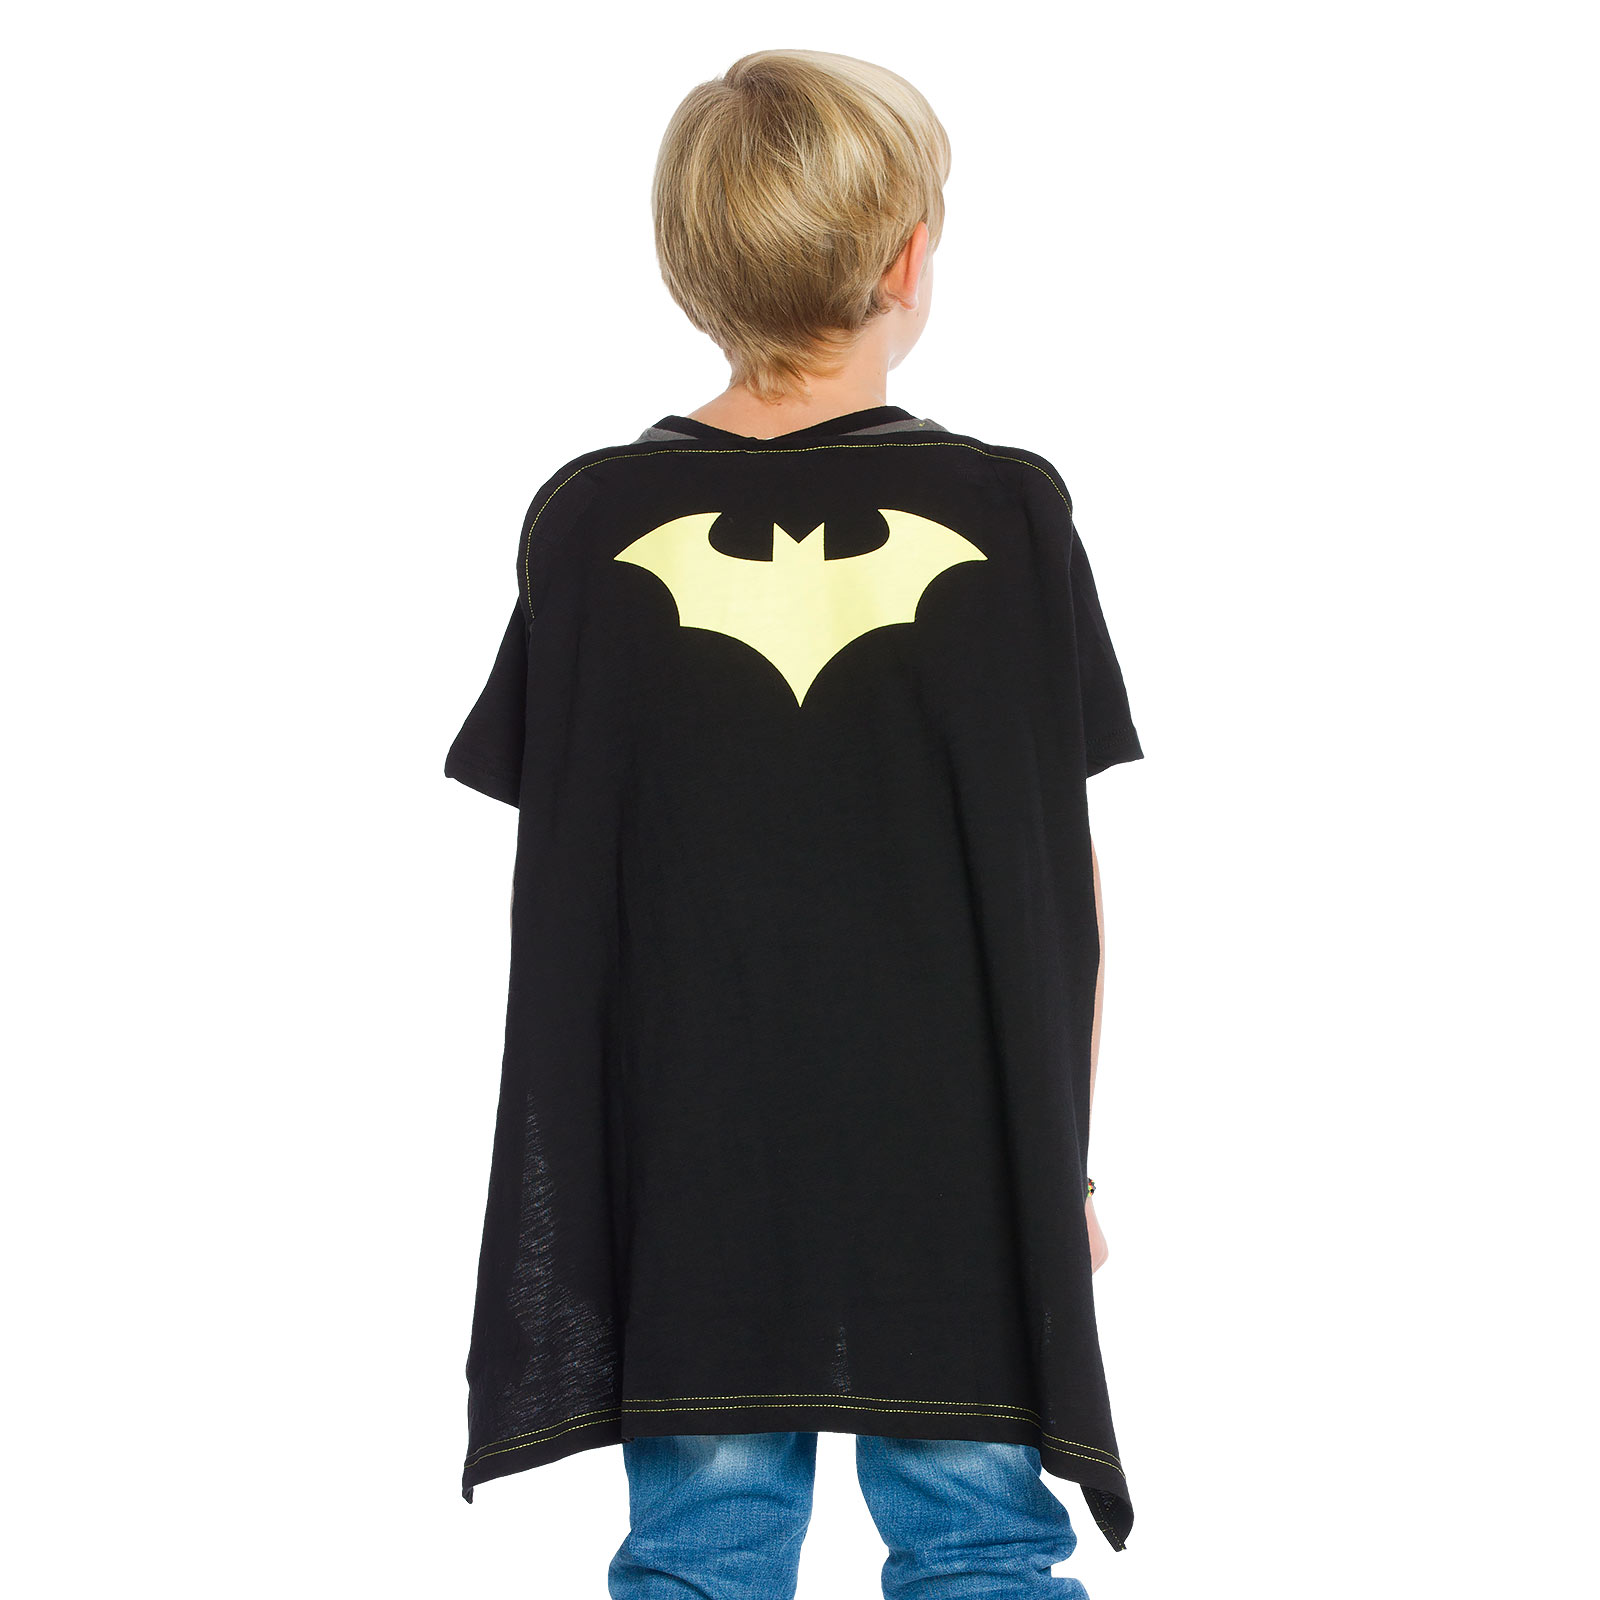 Batman - Kinder T-Shirt mit Cape schwarz